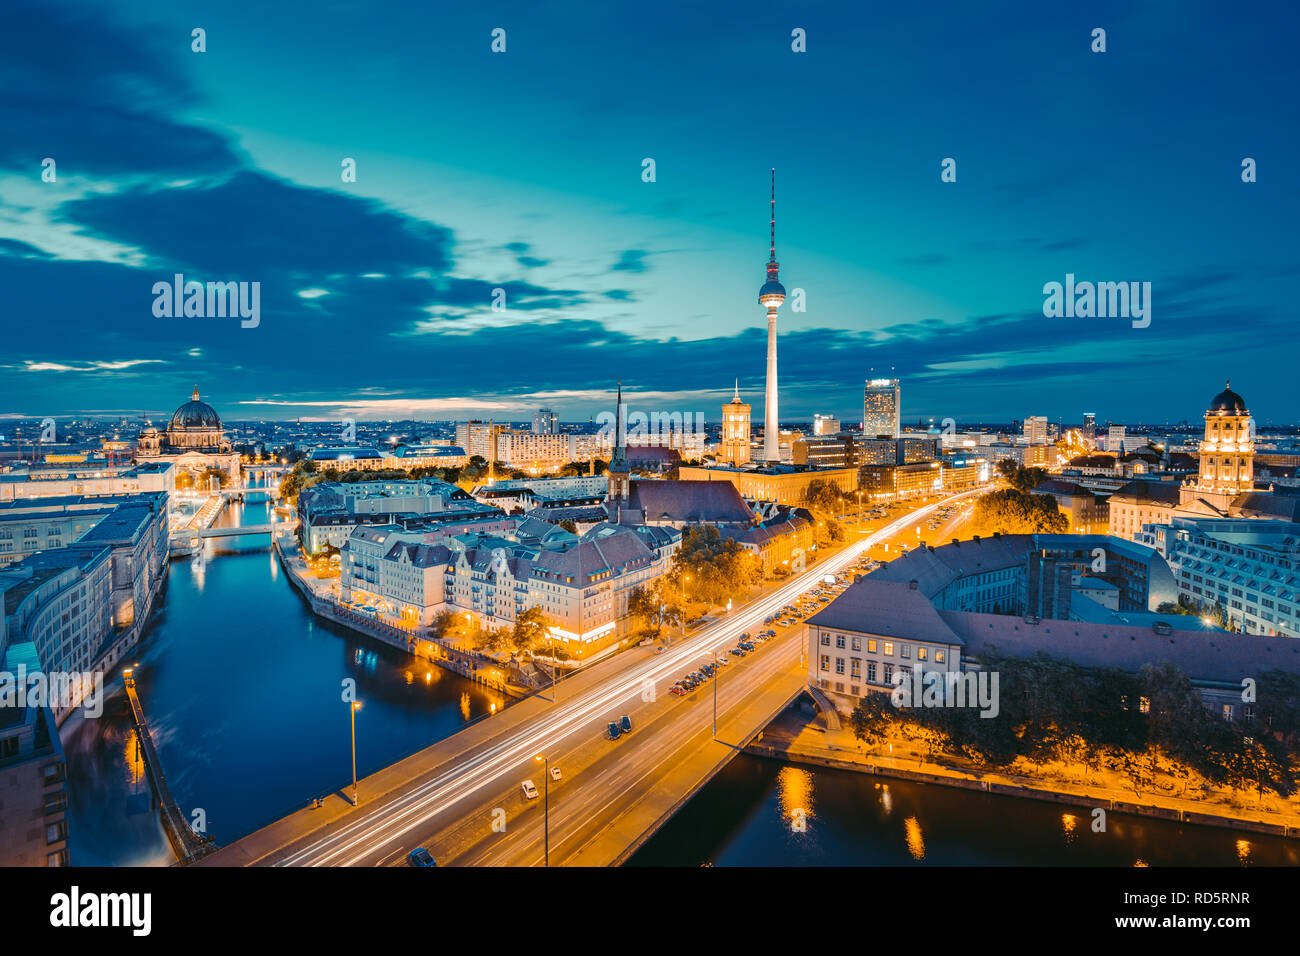 Klassische Ansicht der Berliner Skyline mit berühmten Fernsehturm und Spree in wunderschönen goldenen Abendlicht bei Sonnenuntergang, zentrale Berlin Mitte, Deutschland Stockfoto